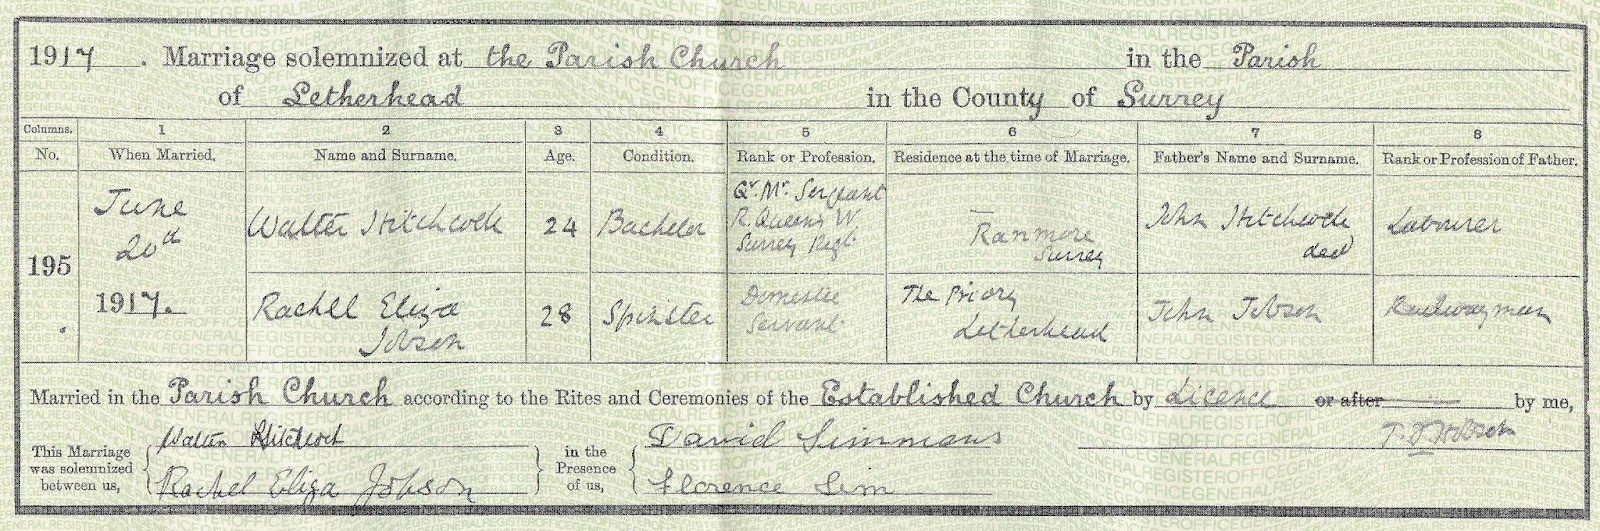 Walter Hitchcock Marriage Certificate..jpg